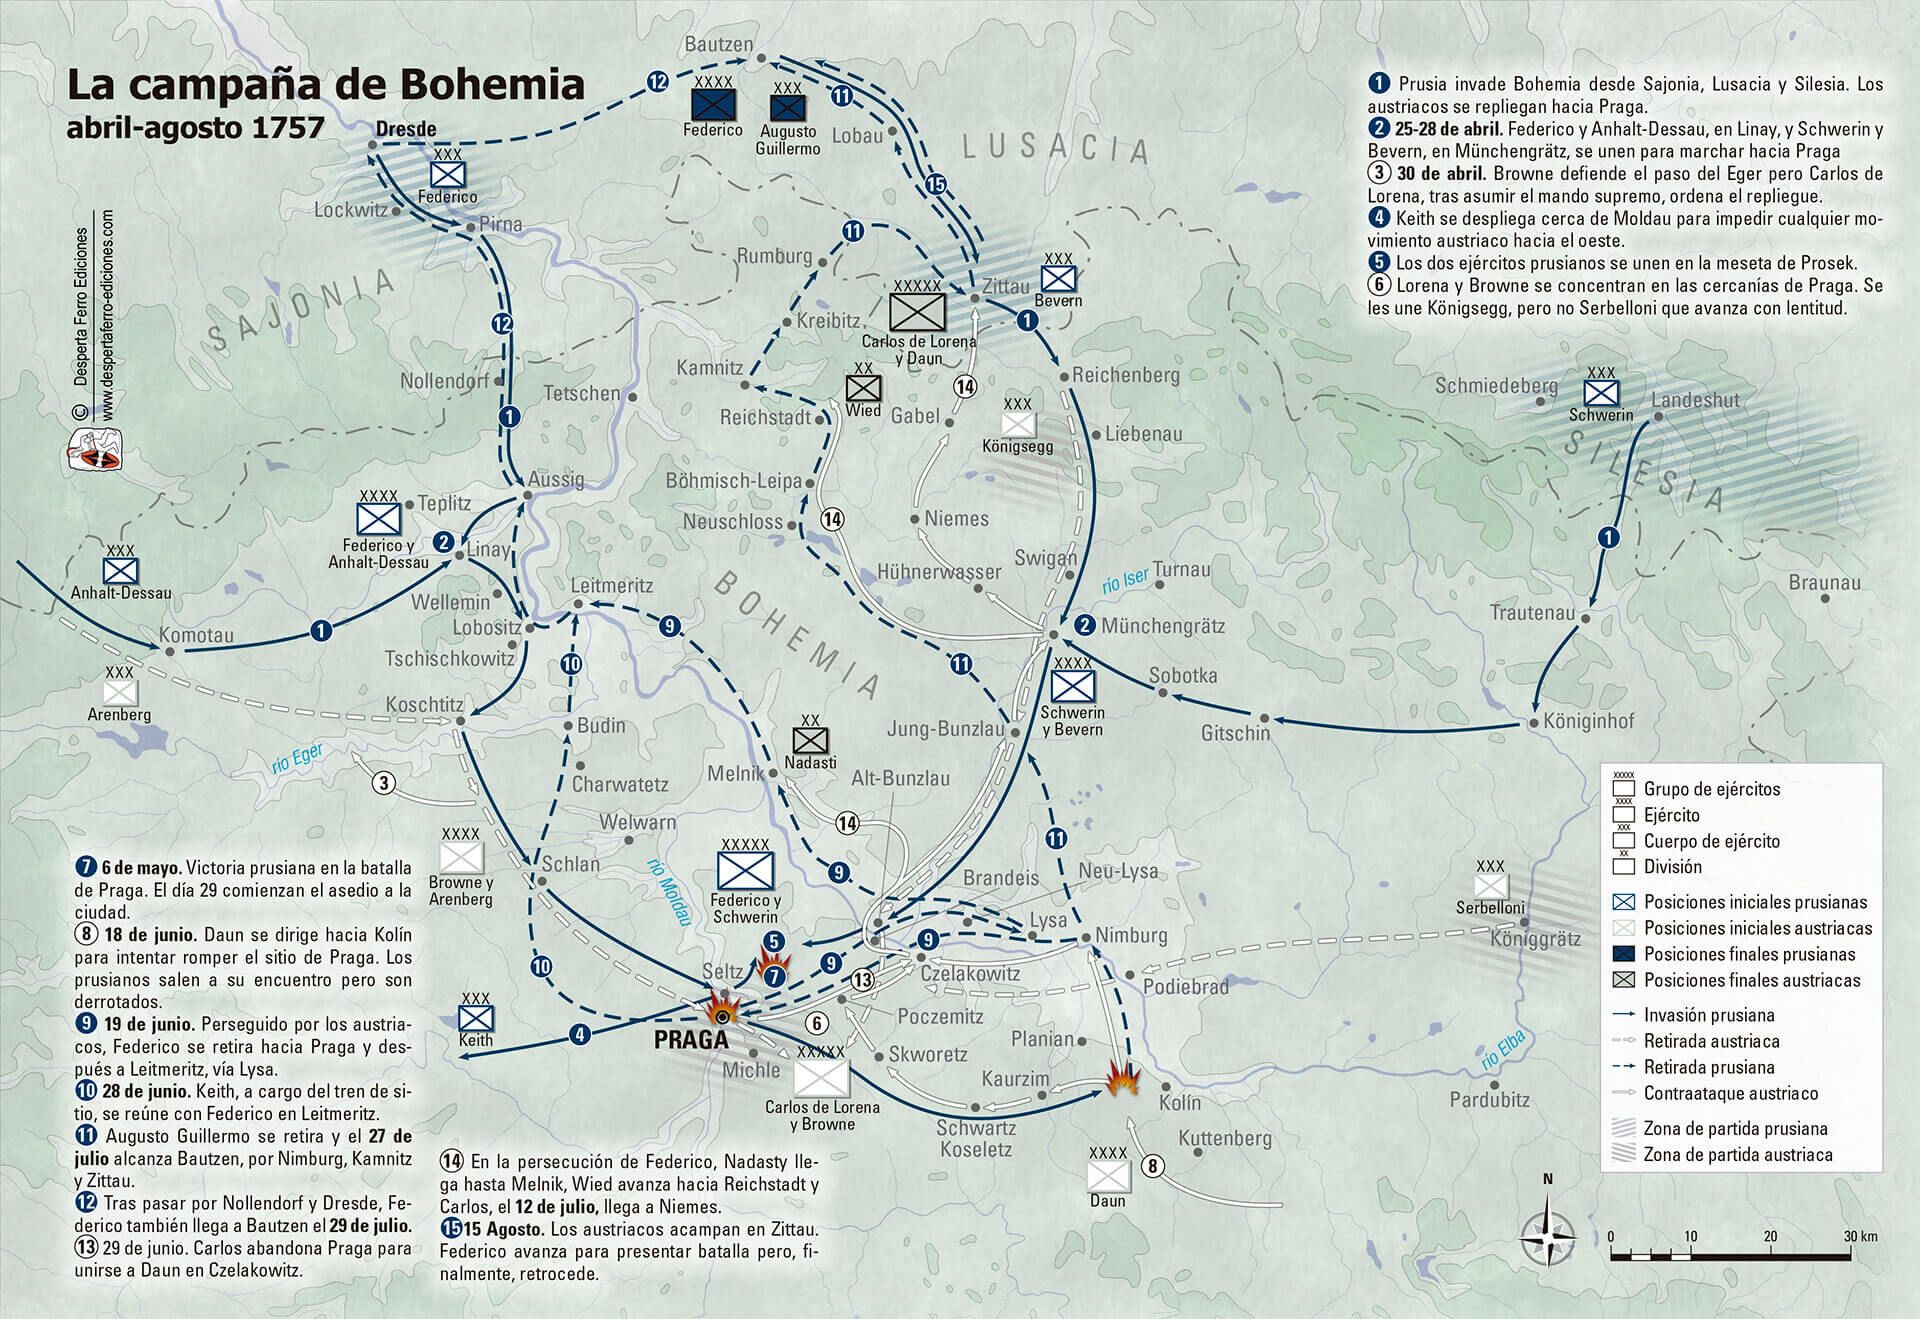 Mapa campaña de Bohemia 1757 Federico el grande Prusia Austria 